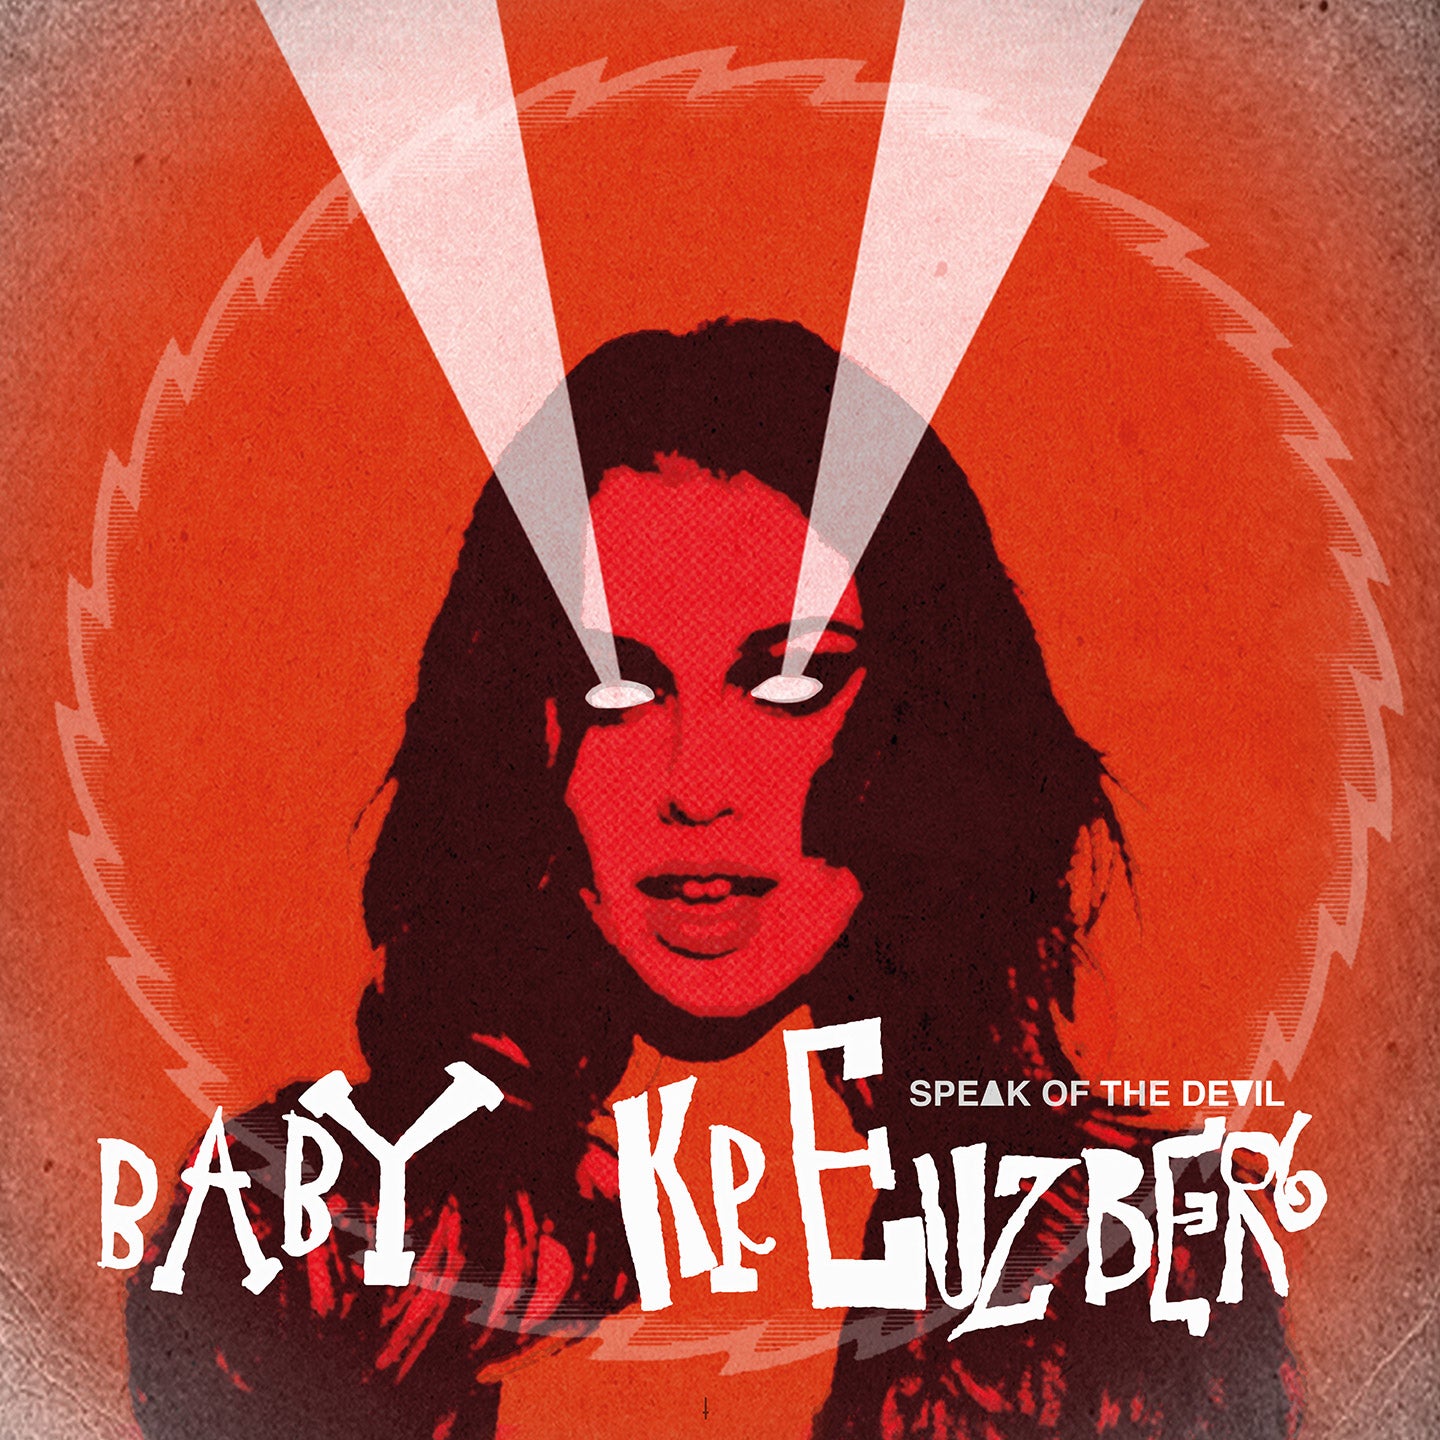 Baby Kreuzberg - Speak Of The Devil (12" vinyl album)